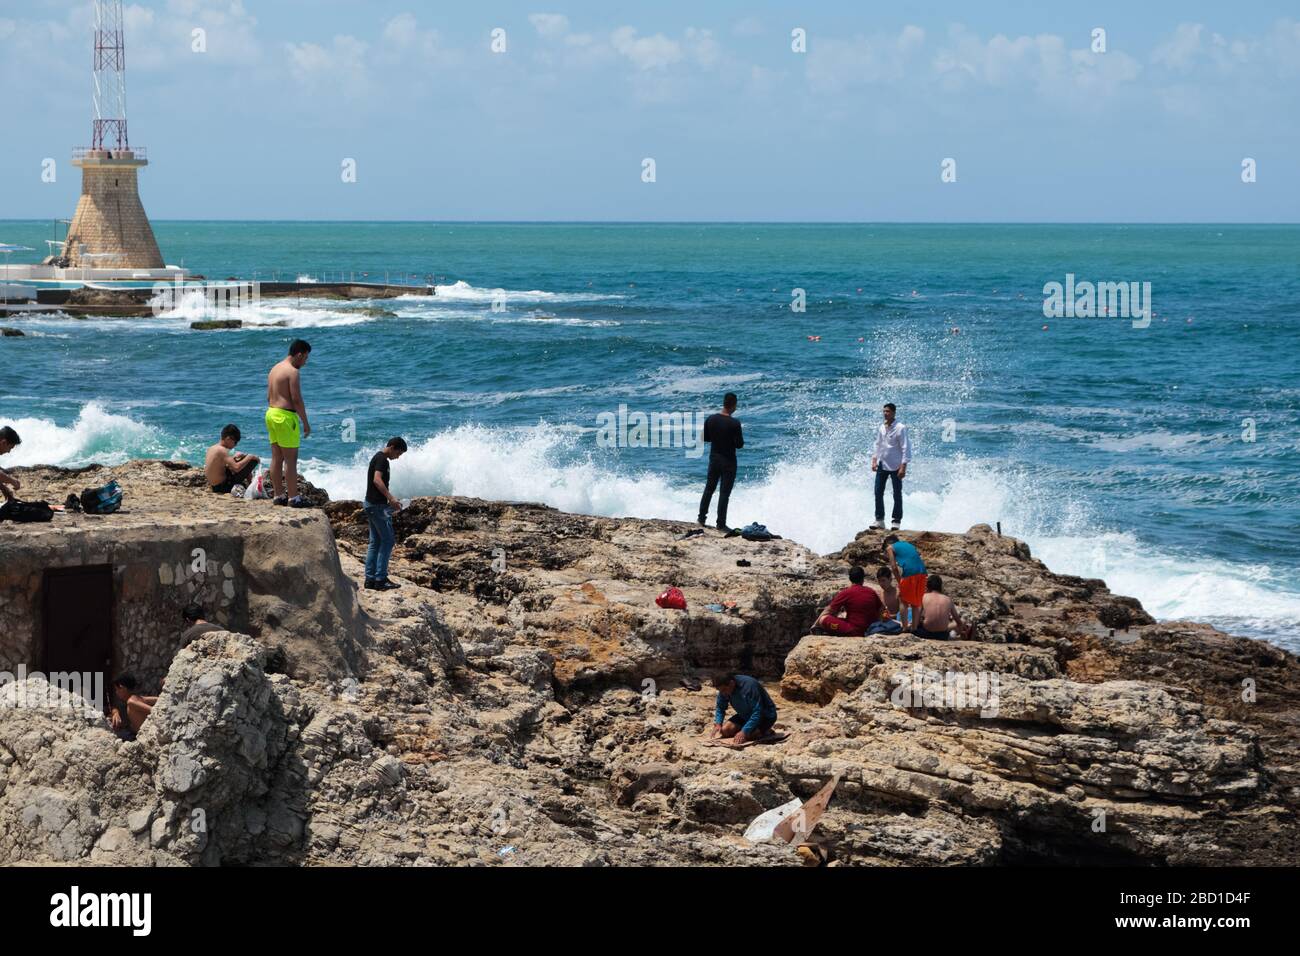 Beyrouth, Liban - 21 mai 2017 : des hommes inconnus passent leur temps libre près du bord de mer. Banque D'Images